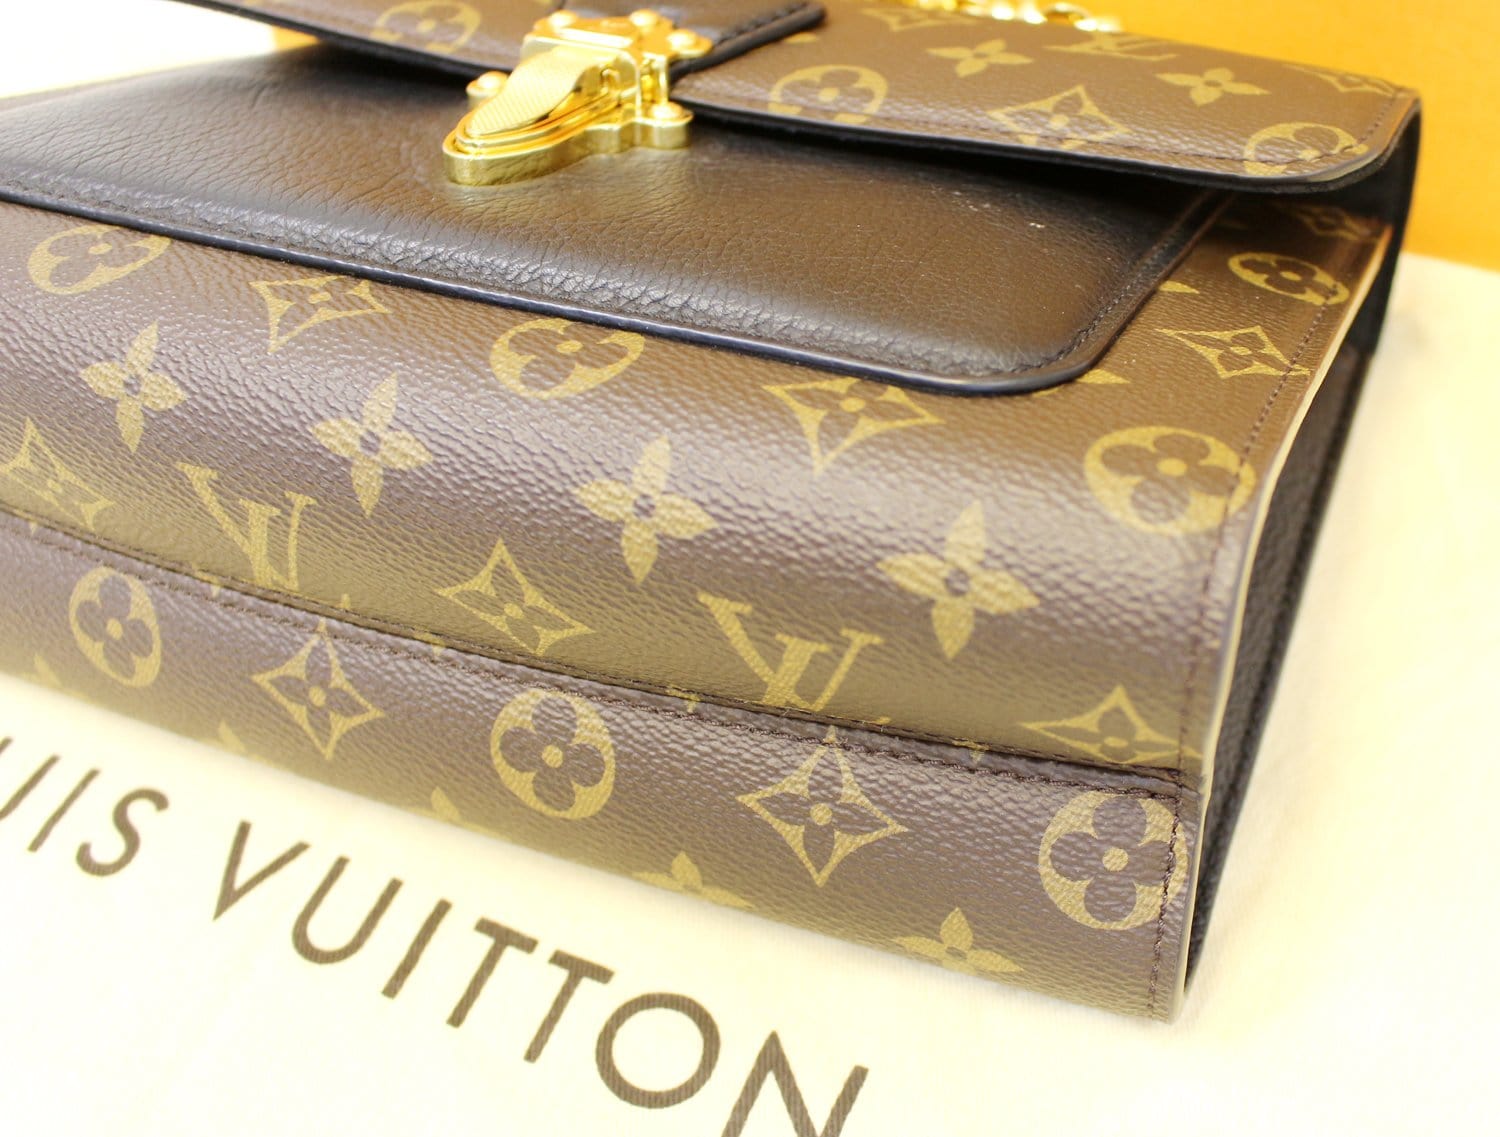 Louis-Vuitton-Monogram-Grained-Calf-Leather-Double-V-Bag-M55022